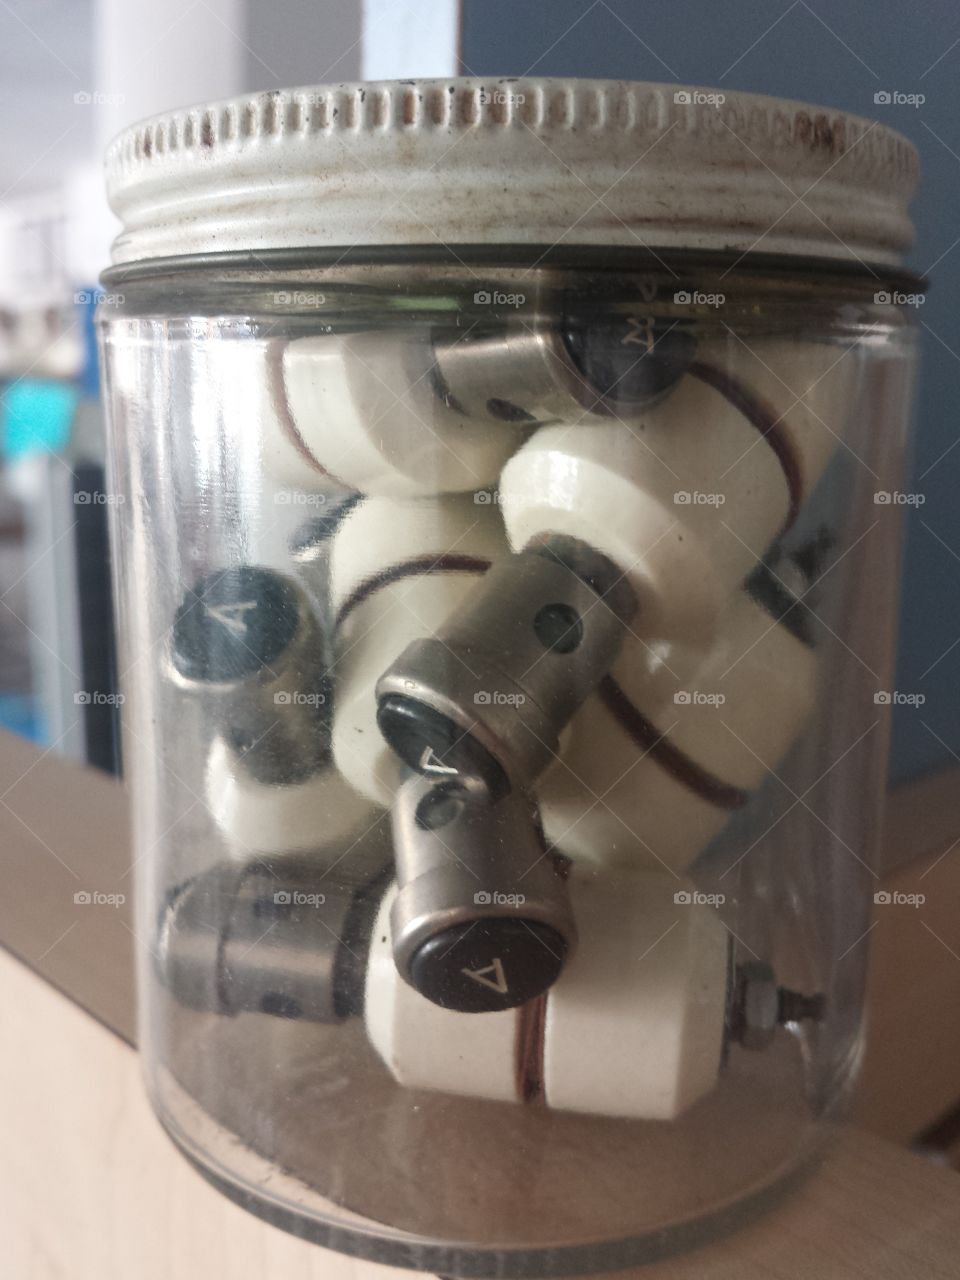 Things in a jar